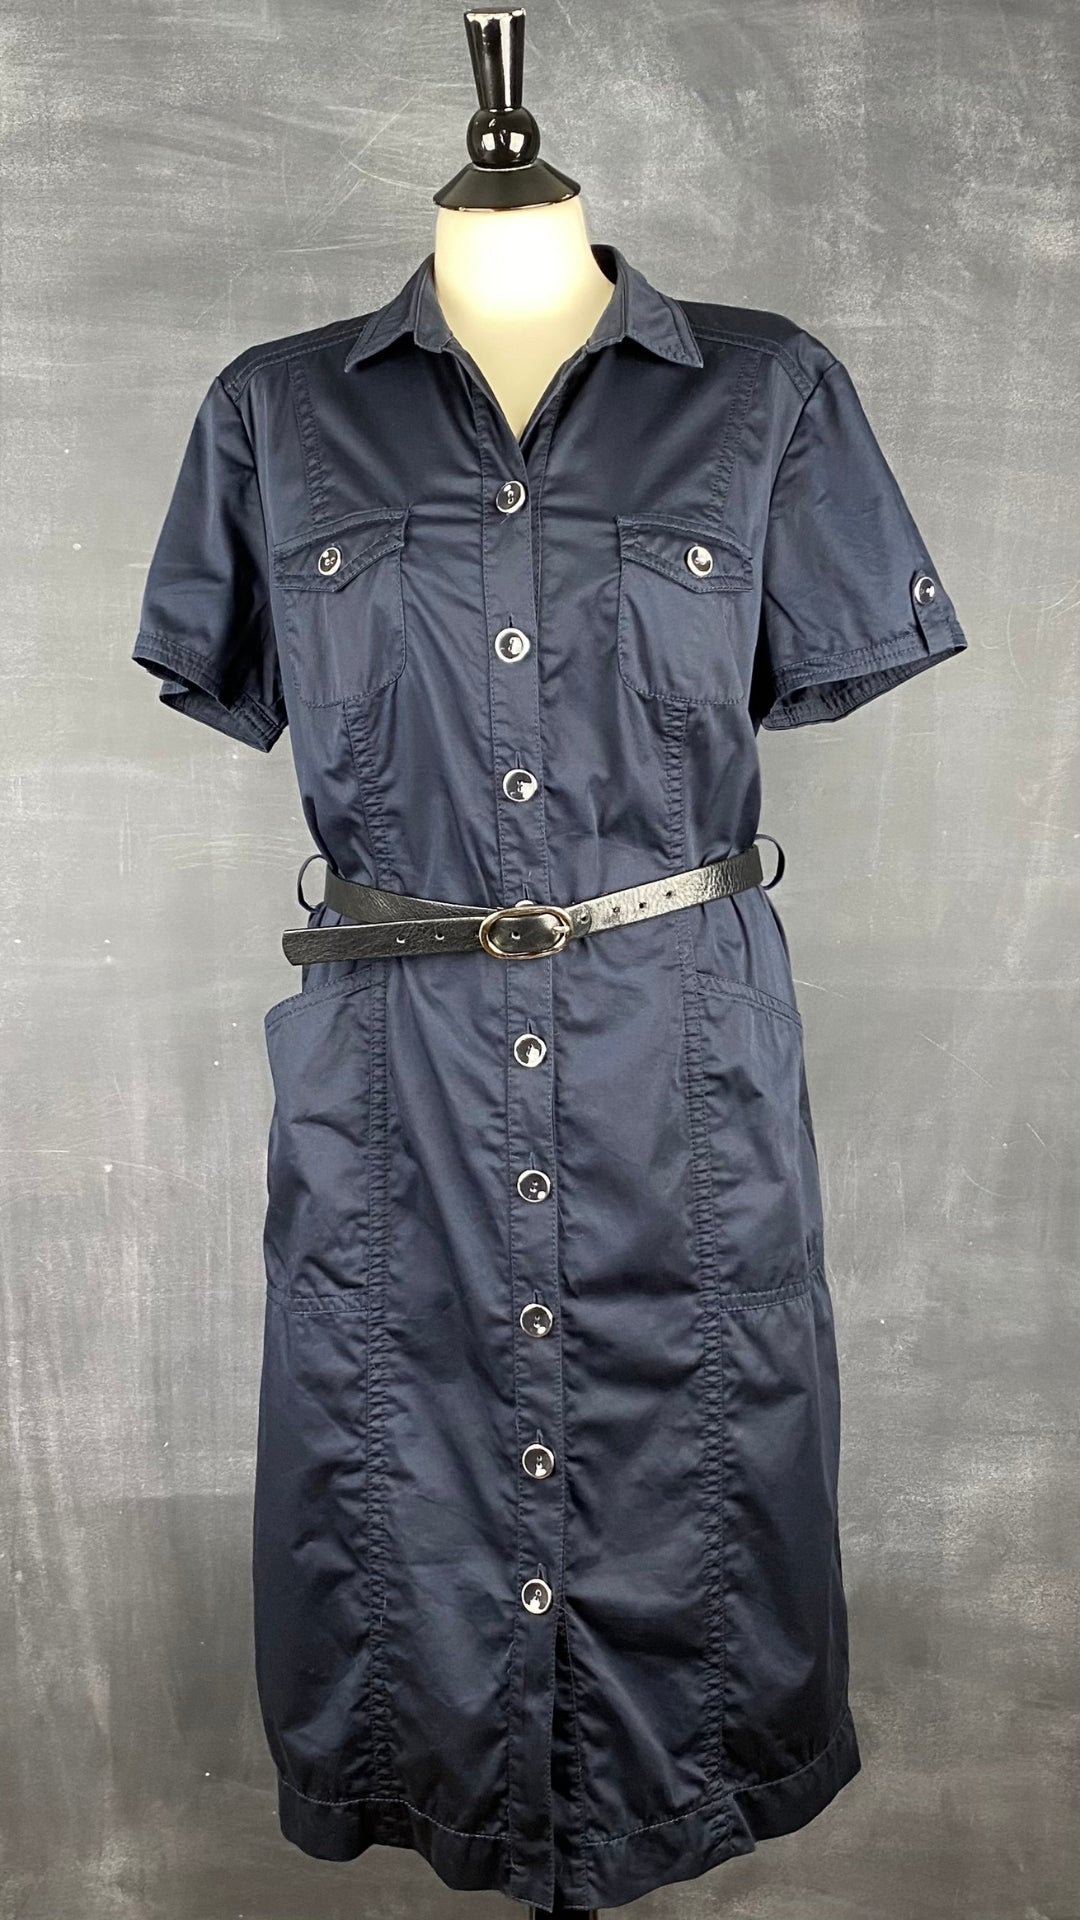 Robe chemisier marine avec poches Gerry Weber, taille large ou xl. Vue de face, avec une ceinture.